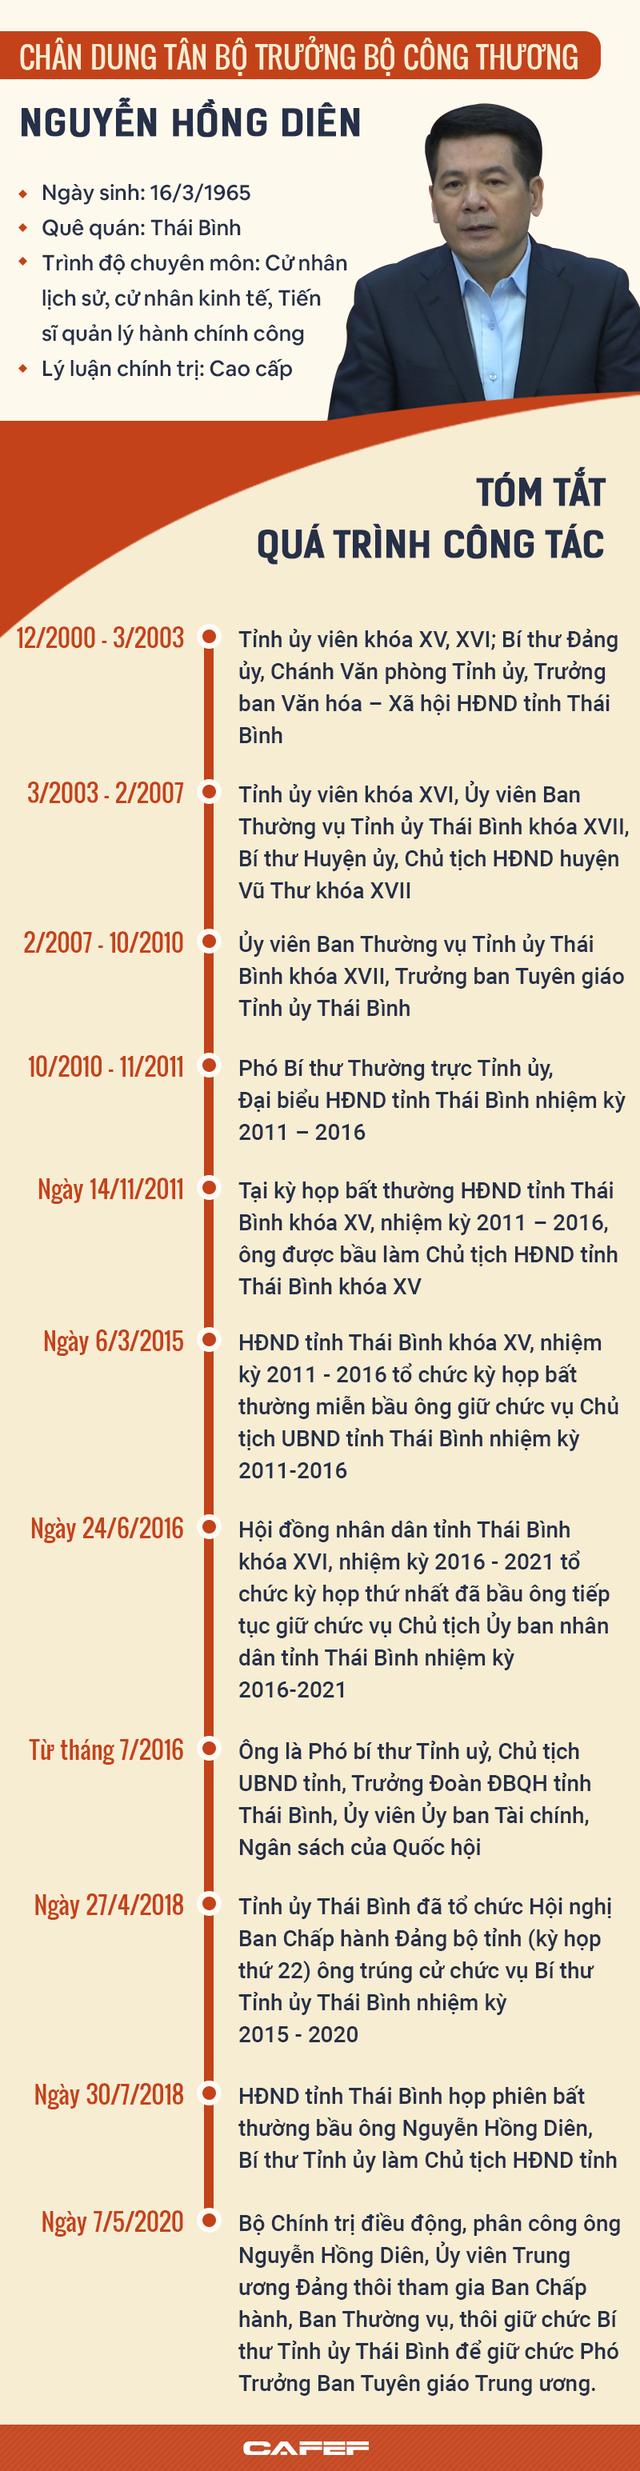 Infographic: Sự nghiệp Bộ trưởng Bộ Công Thương Nguyễn Hồng Diên - Ảnh 1.